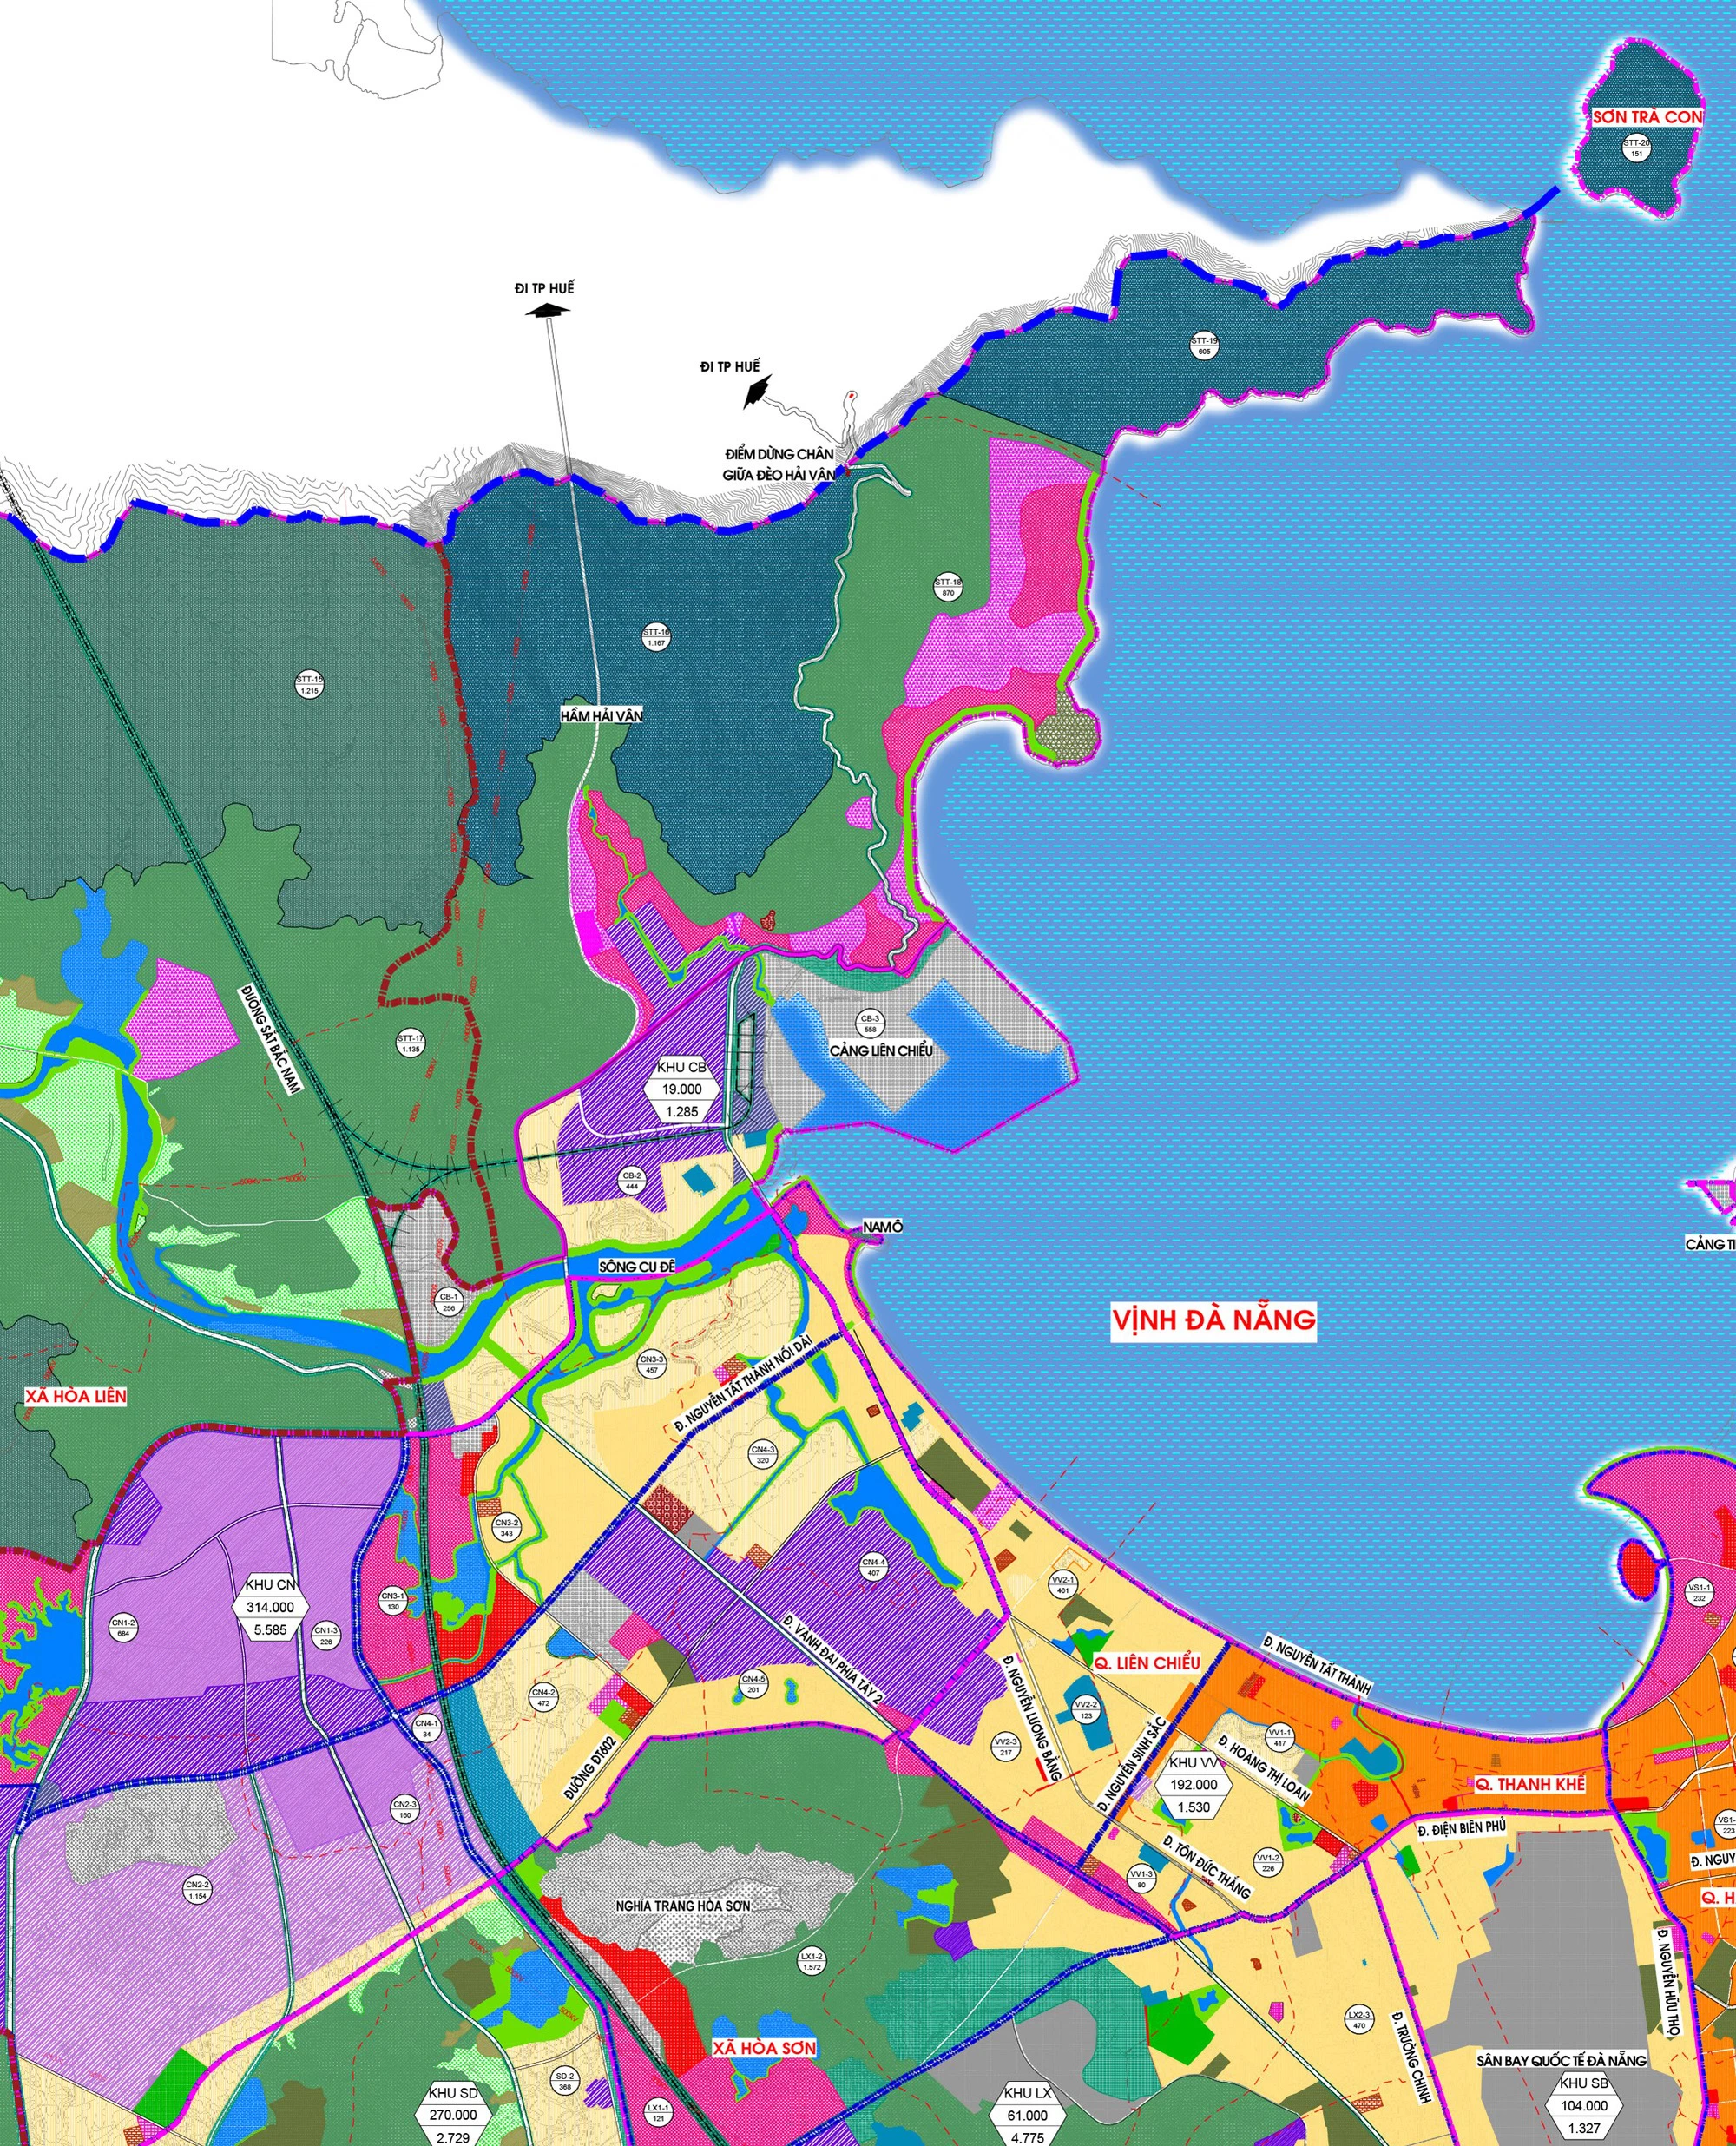 Bản đồ quy hoạch sử dụng đất quận Liên Chiểu Đà Nẵng 2024 cung cấp những thông tin quan trọng về phân bổ đất đai, tạo ra một hình ảnh rõ nét về các khu vực phát triển mới trong tương lai. Nếu bạn là một nhà đầu tư hoặc muốn tìm hiểu về khu vực Liên Chiểu, bản đồ sẽ giúp bạn có được cái nhìn tổng quan nhất và đầy đủ.